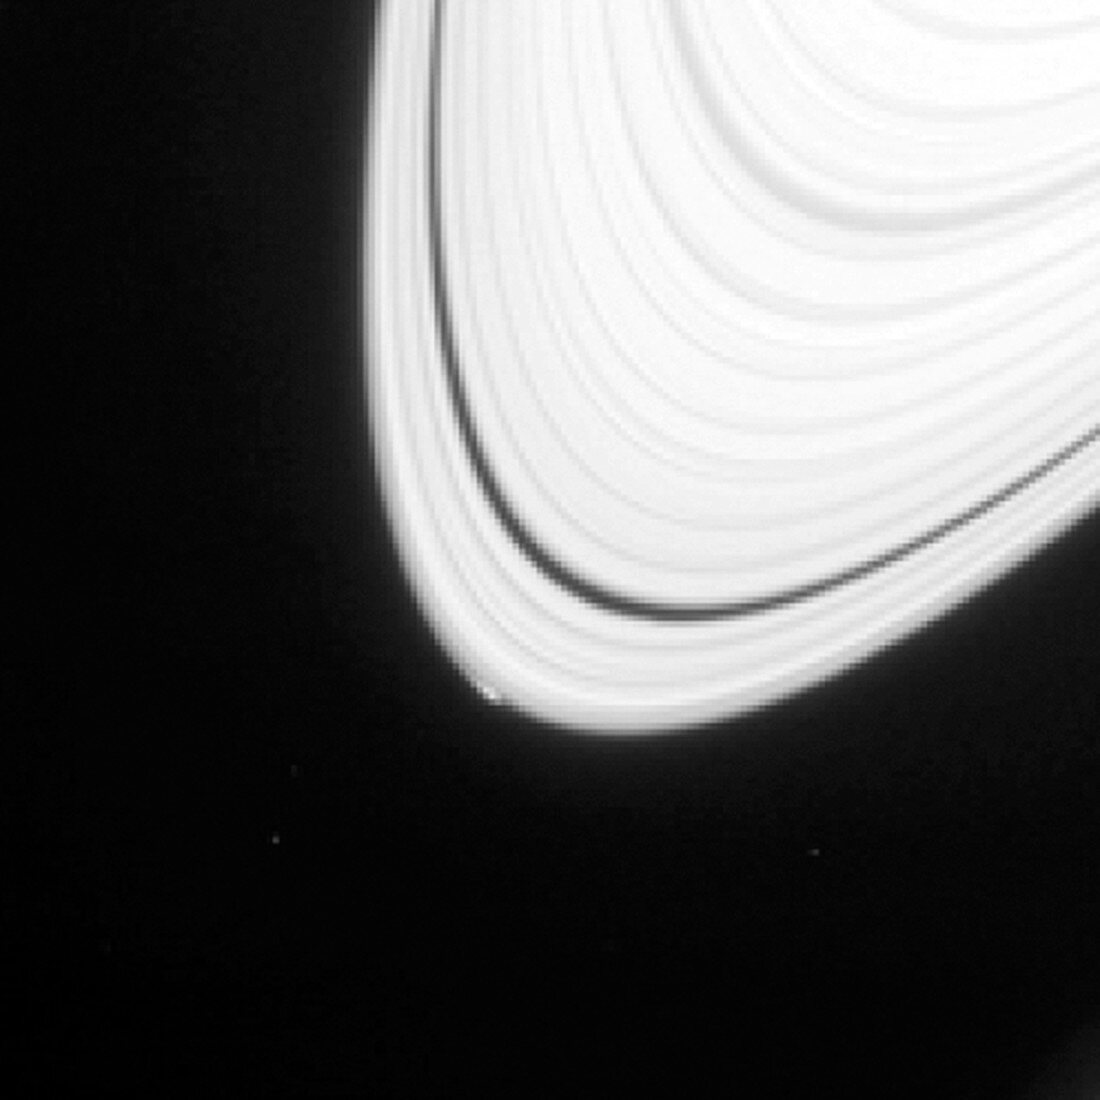 Disturbance in Saturn's rings, Cassini image